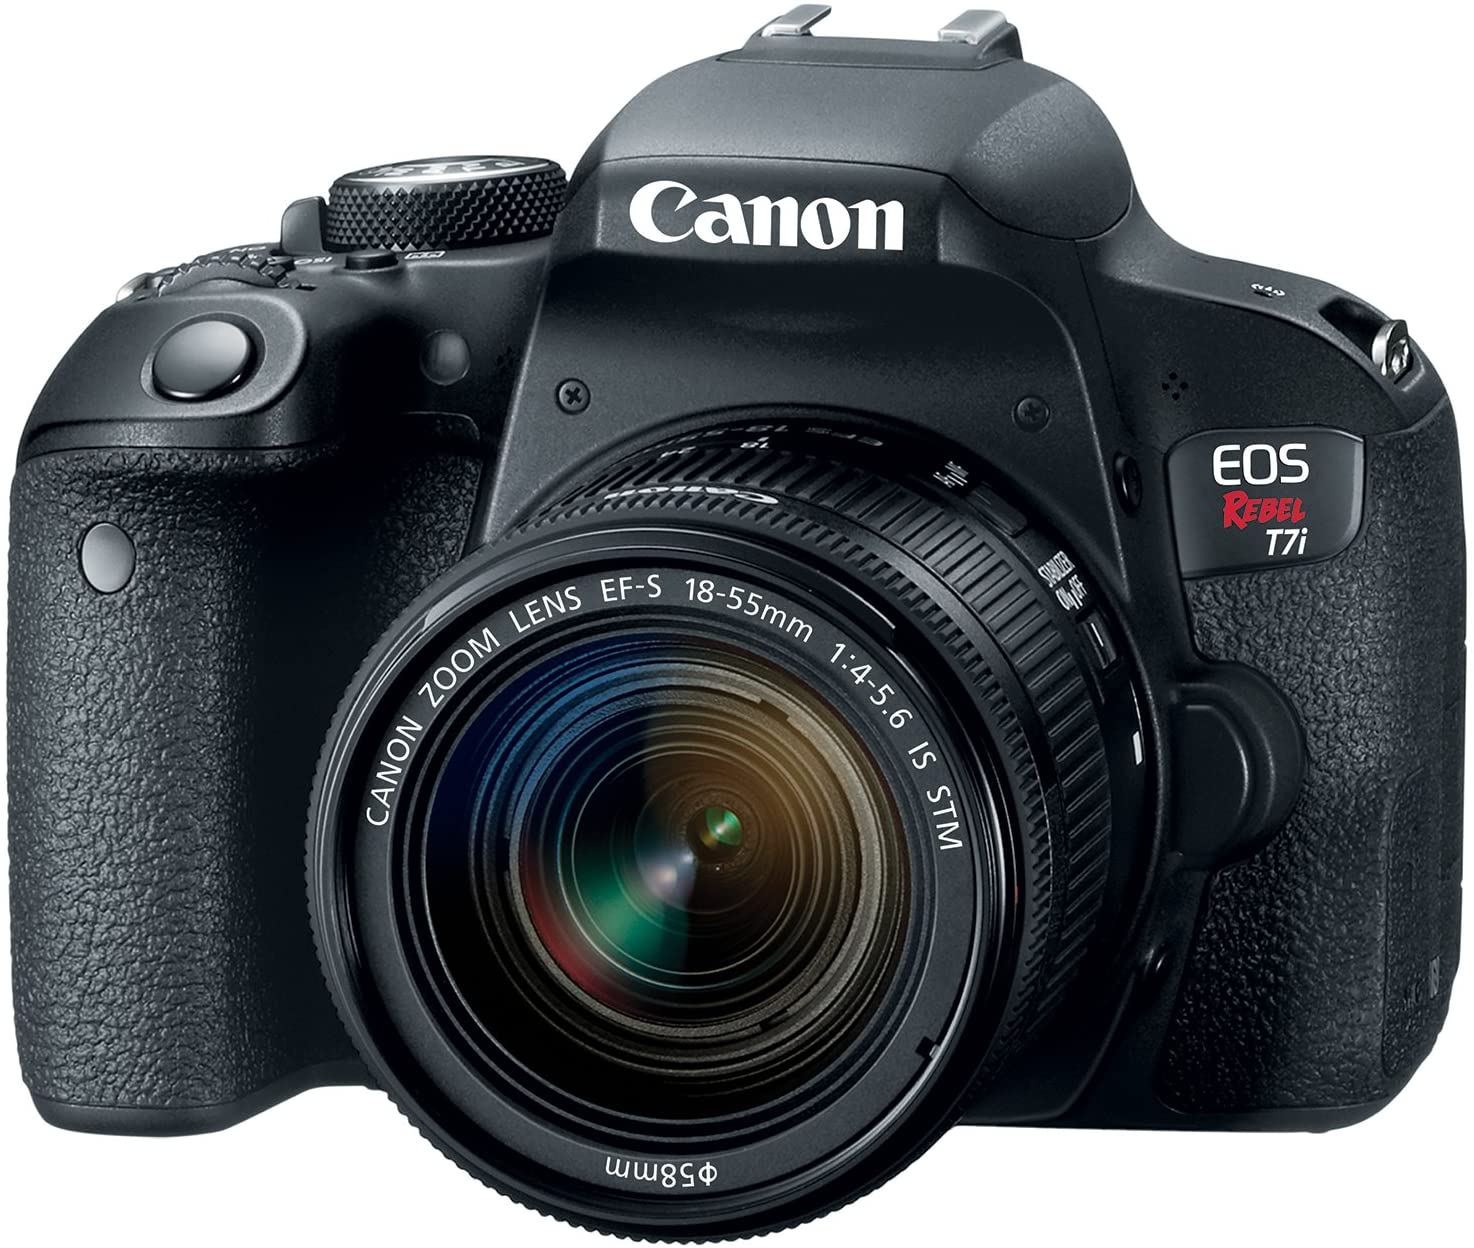 Ở dòng máy ảnh Rebel của Canon hiện tại, T7i (EOS 800D ở Châu Âu) cung cấp một số tính năng đáng để bạn cân nhắc. 